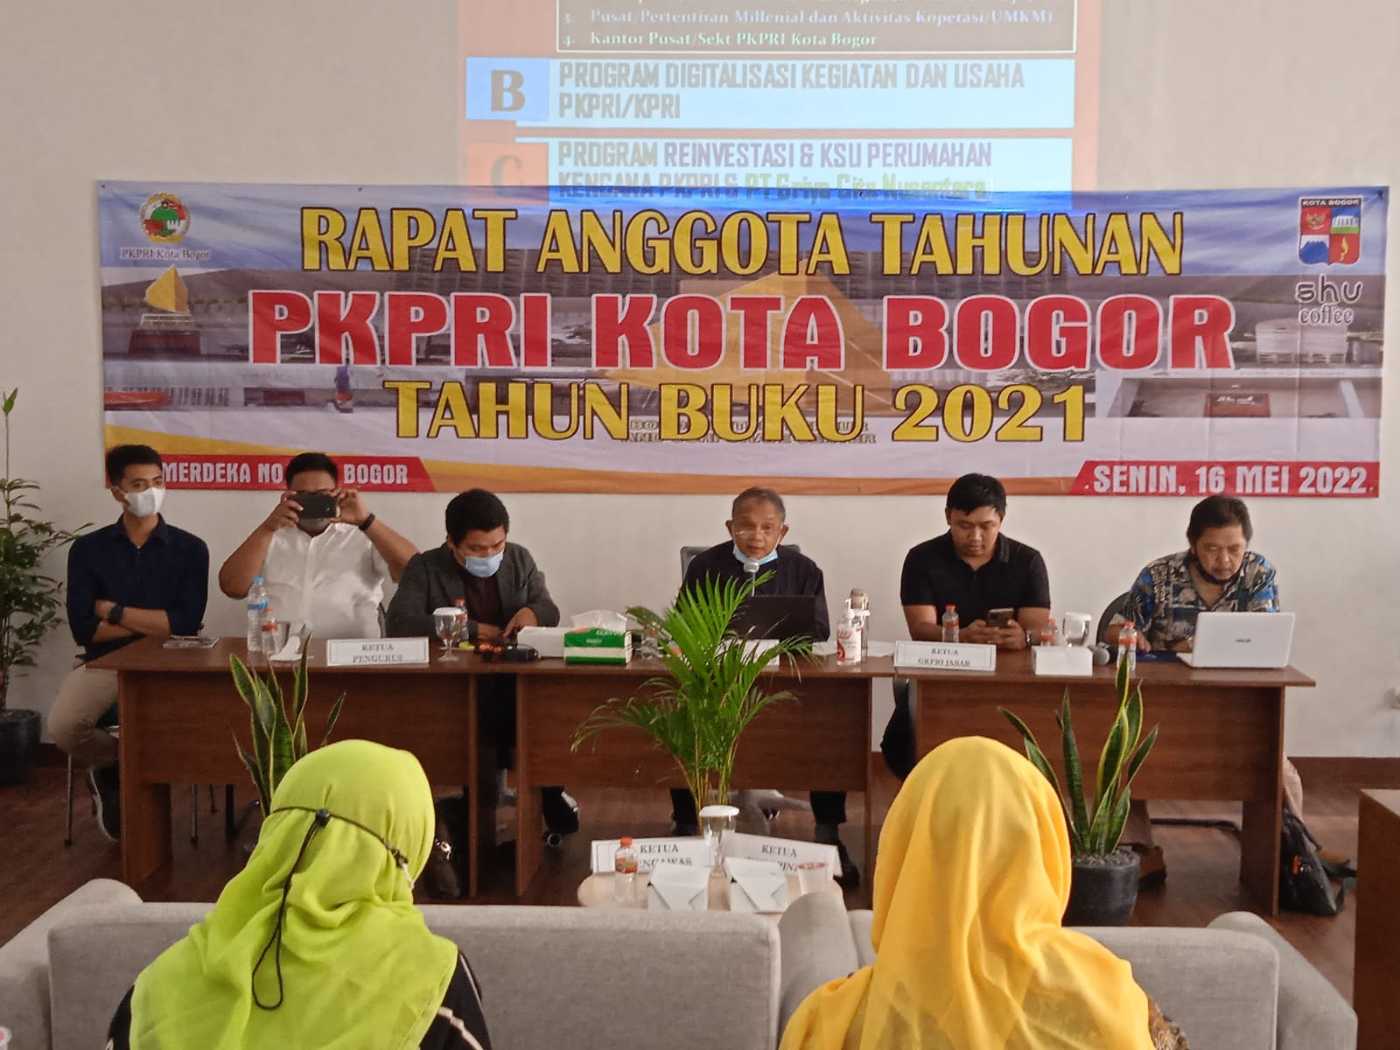 PKPRI Kota Bogor, Renovasi Dukung Ekspansi Bisnis